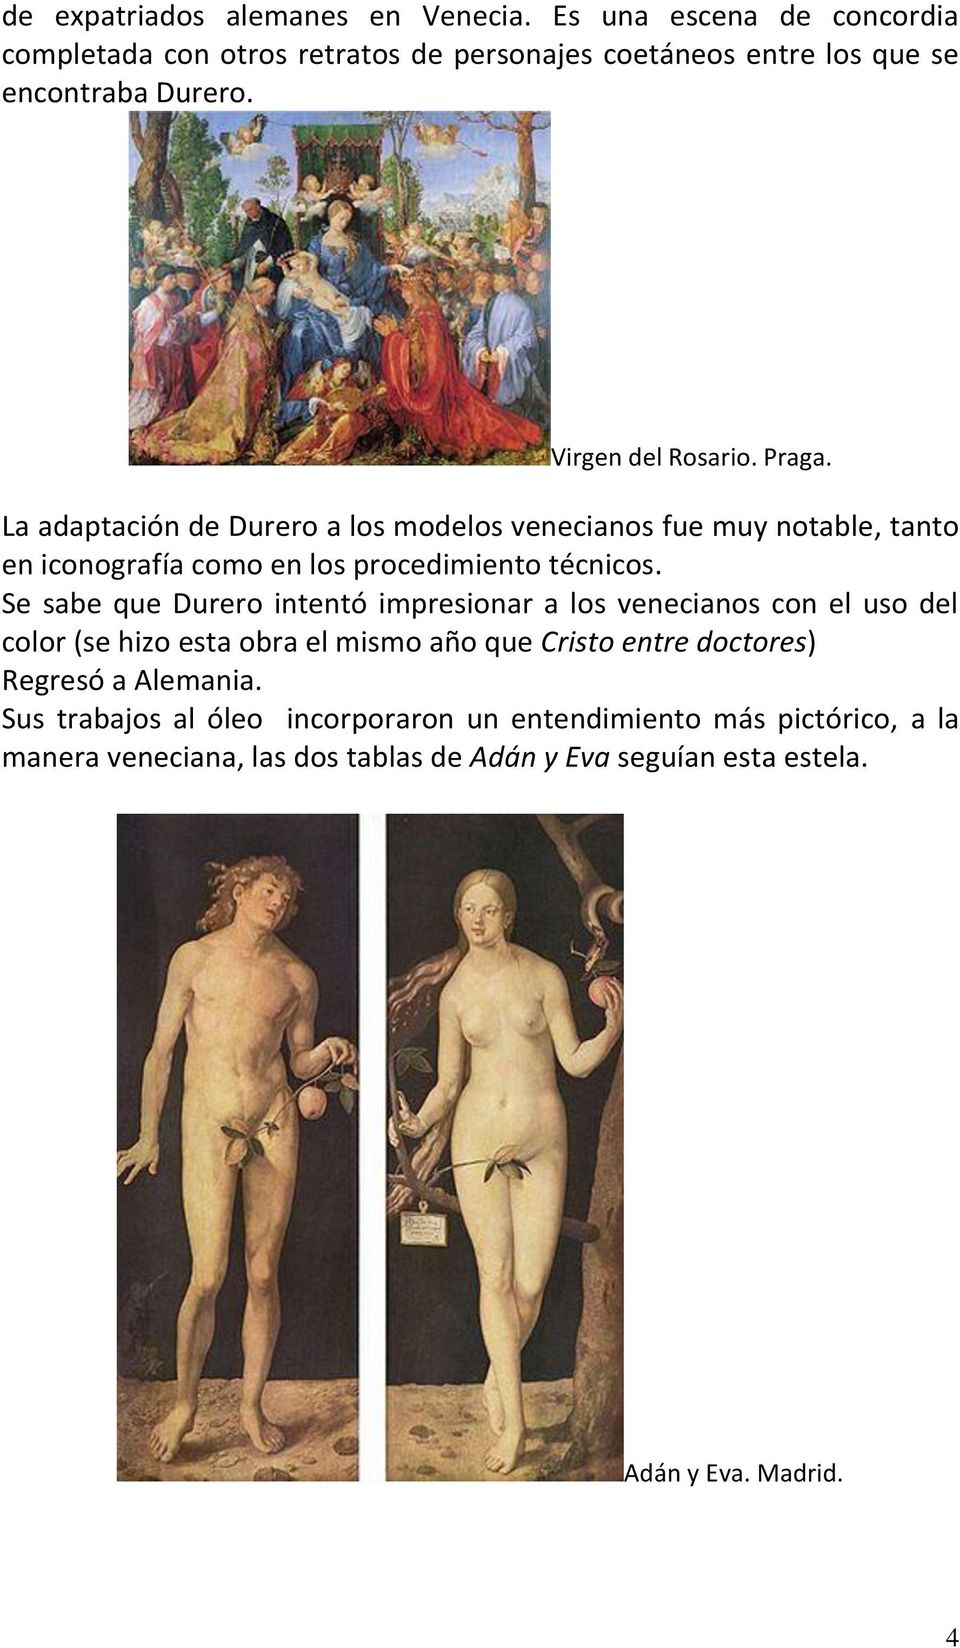 Se sabe que Durero intentó impresionar a los venecianos con el uso del color (se hizo esta obra el mismo año que Cristo entre doctores) Regresó a Alemania.